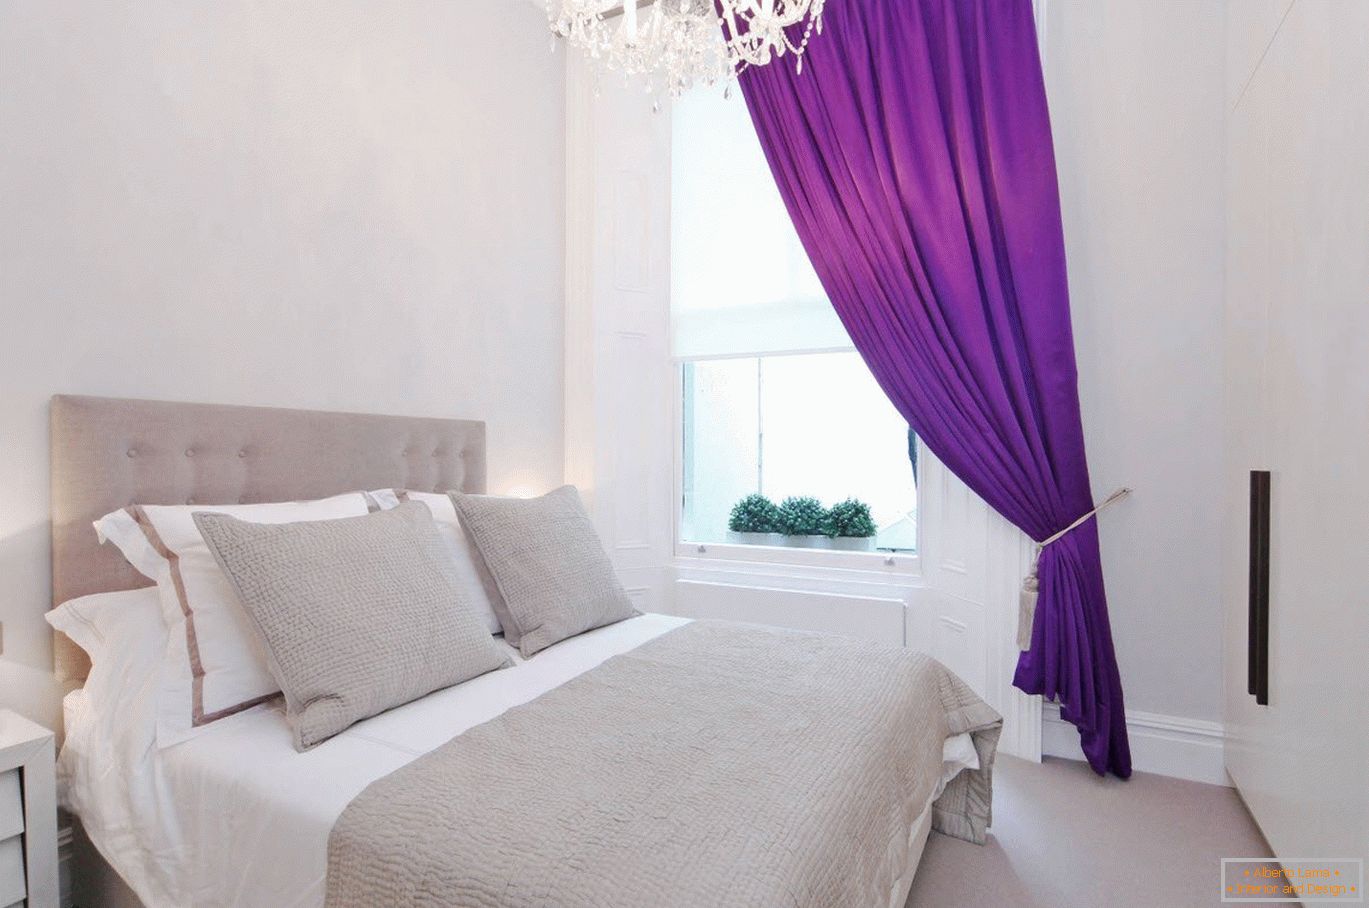 Purpurne zavese u belom unutrašnjosti spavaće sobe